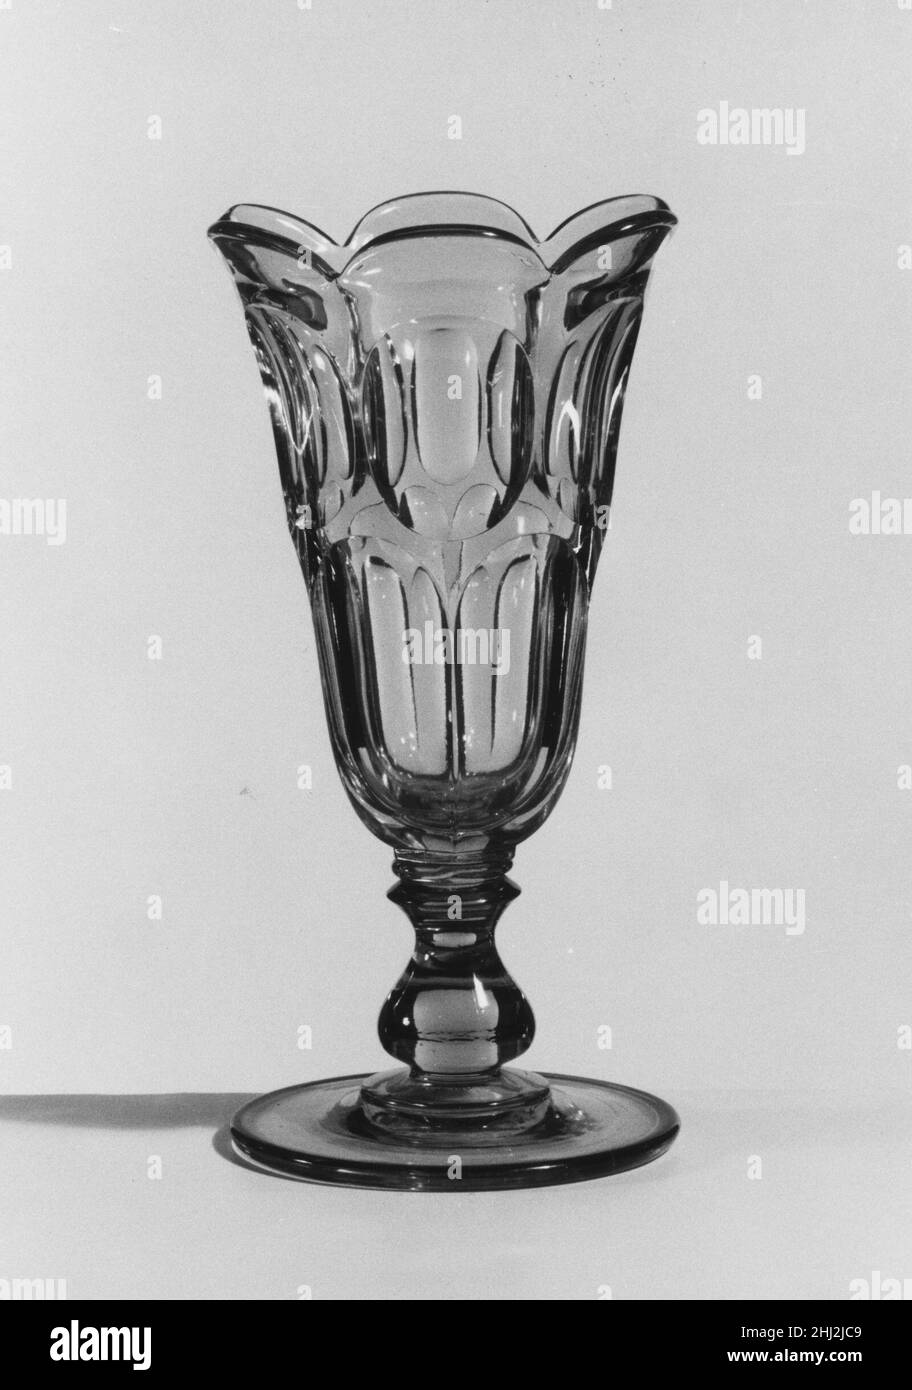 Céleri vase 1840–50 américain avec le développement de nouvelles formules et techniques, la technologie de pressage du verre s'était nettement améliorée à la fin de 1840s.À ce moment-là, les tablewares pressés étaient produits dans de grands ensembles de correspondance et des formes innombrables.Au milieu de l'année 1850s, le verre incolore et les patrons géométriques simples dominaient.Répondant à la demande de produits de restauration à prix modéré, l'industrie du verre aux États-Unis s'est largement développée et de nombreuses usines ont fourni des verres pressés moins chers au marché en pleine croissance.À l’exposition de l’industrie de toutes les nations de Crysta à New York Banque D'Images